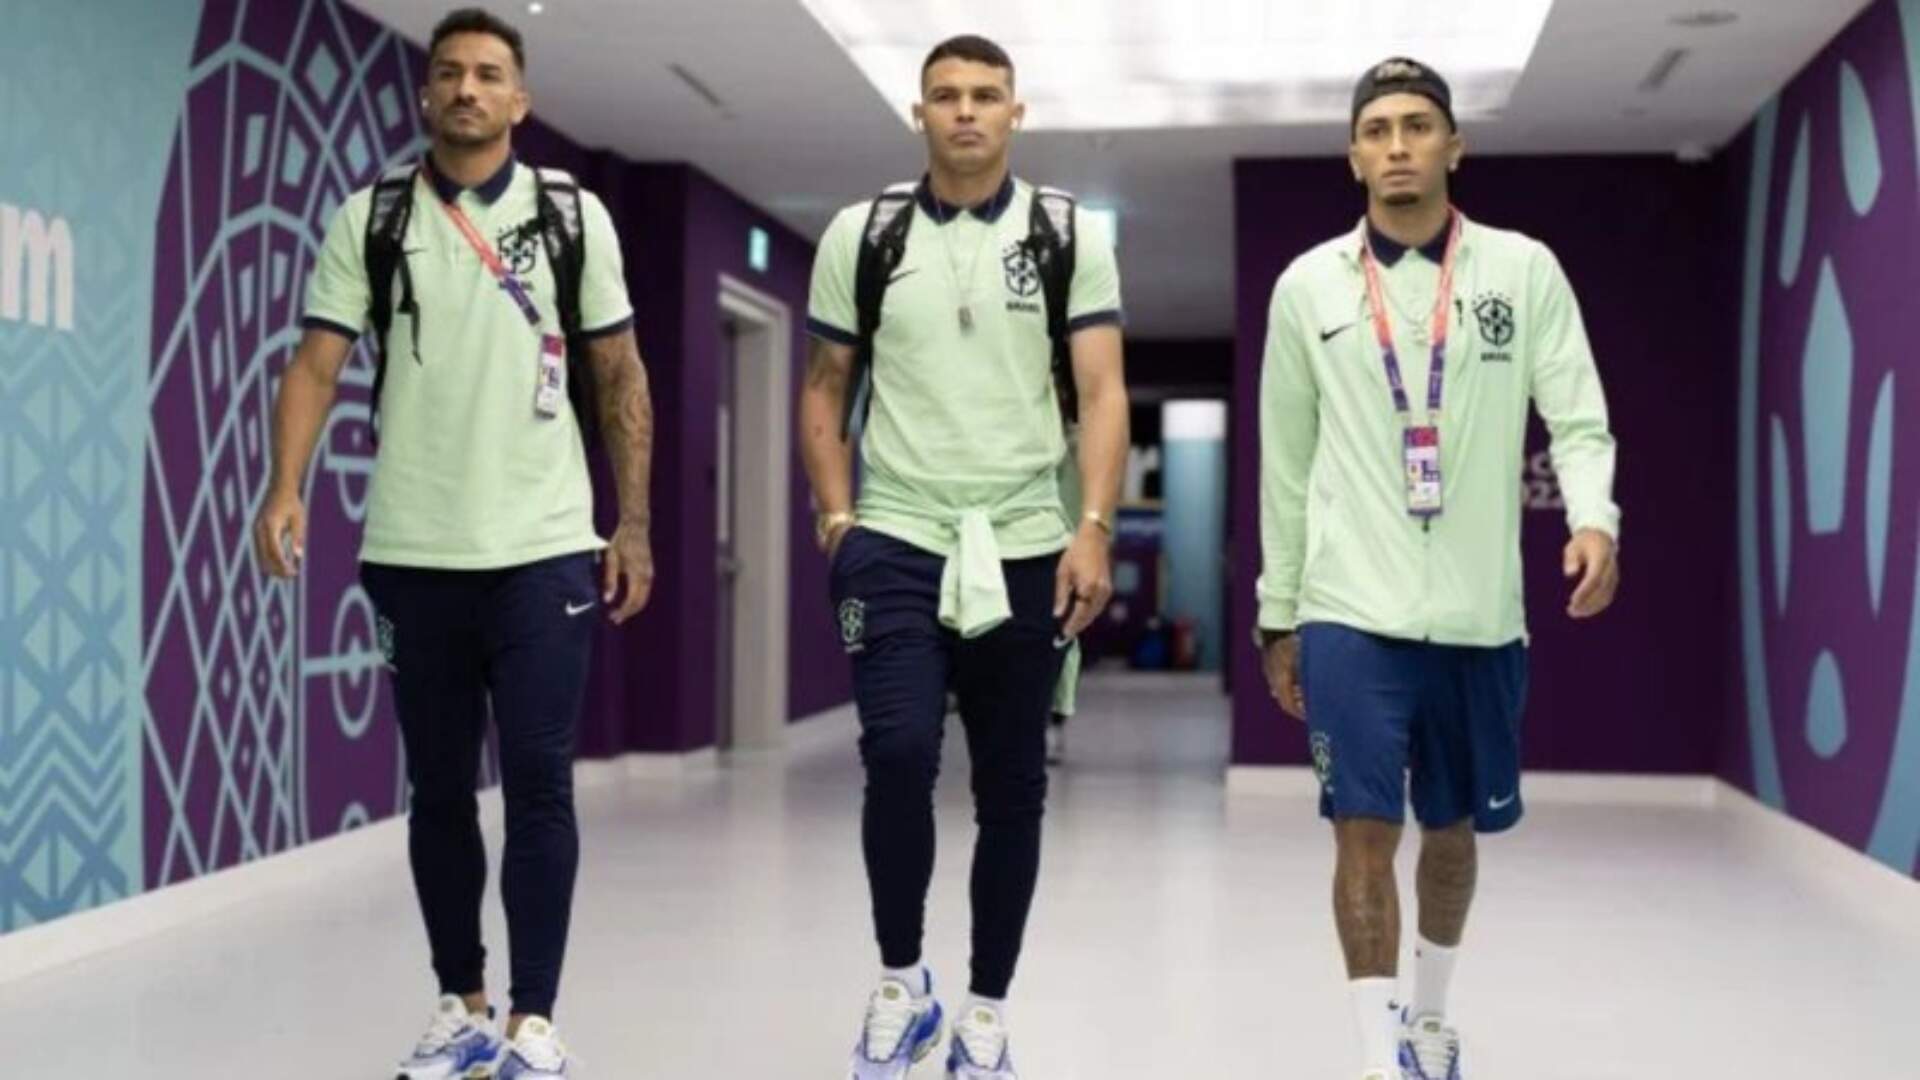 Após eliminação, Seleção Brasileira embarca de volta e jogadores escolhem rumos diferentes - Metropolitana FM